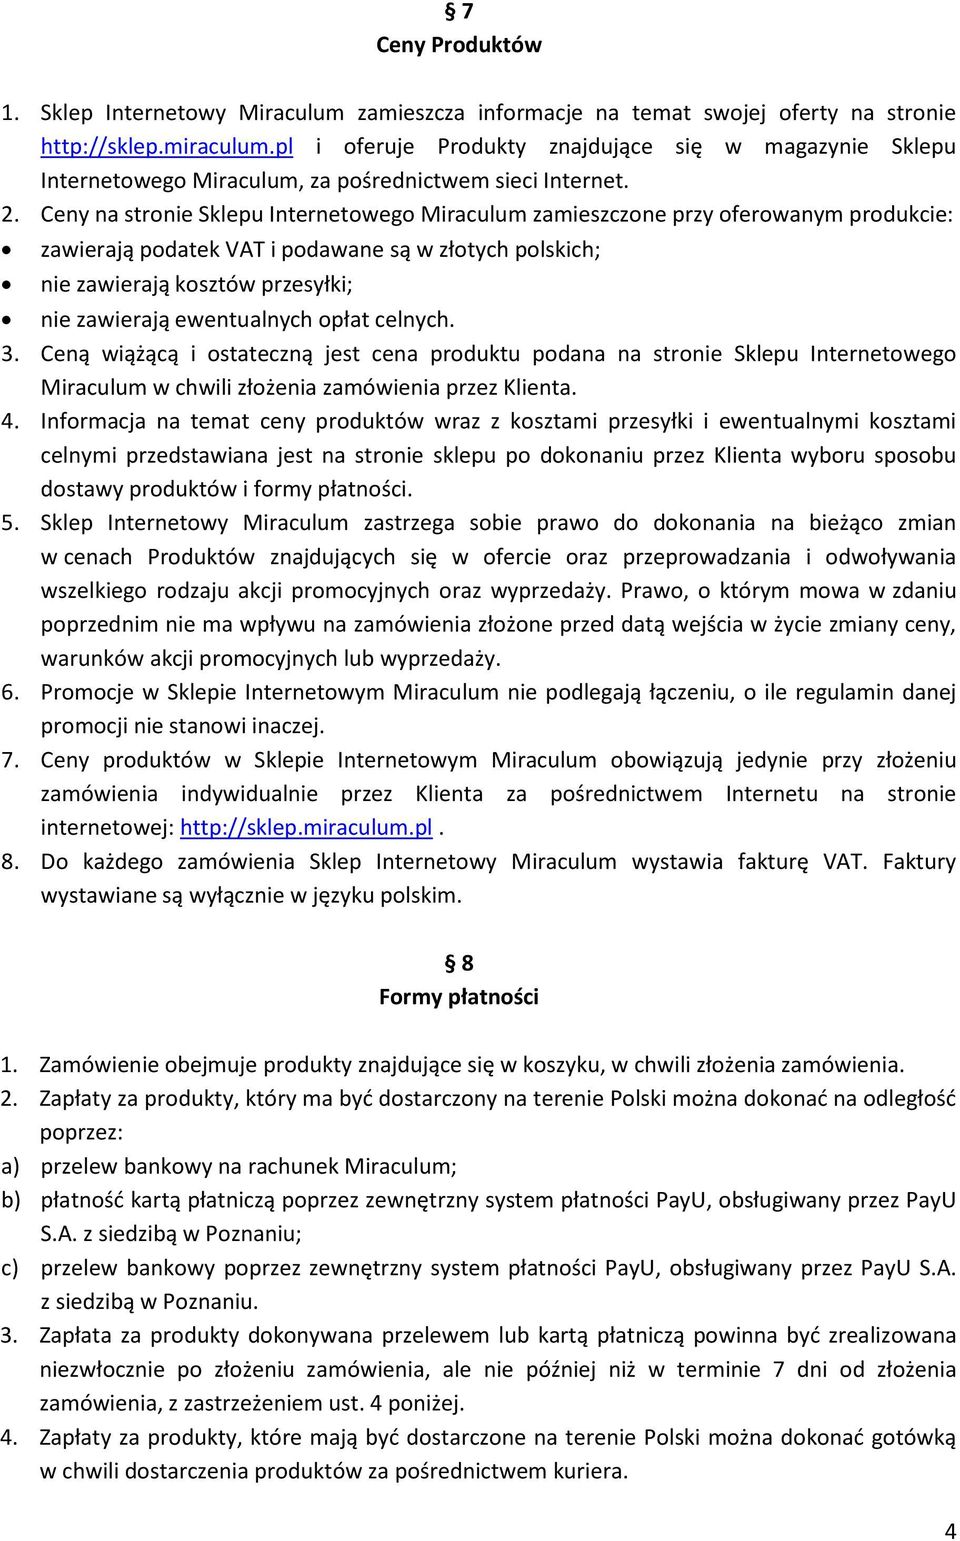 Ceny na stronie Sklepu Internetowego Miraculum zamieszczone przy oferowanym produkcie: zawierają podatek VAT i podawane są w złotych polskich; nie zawierają kosztów przesyłki; nie zawierają